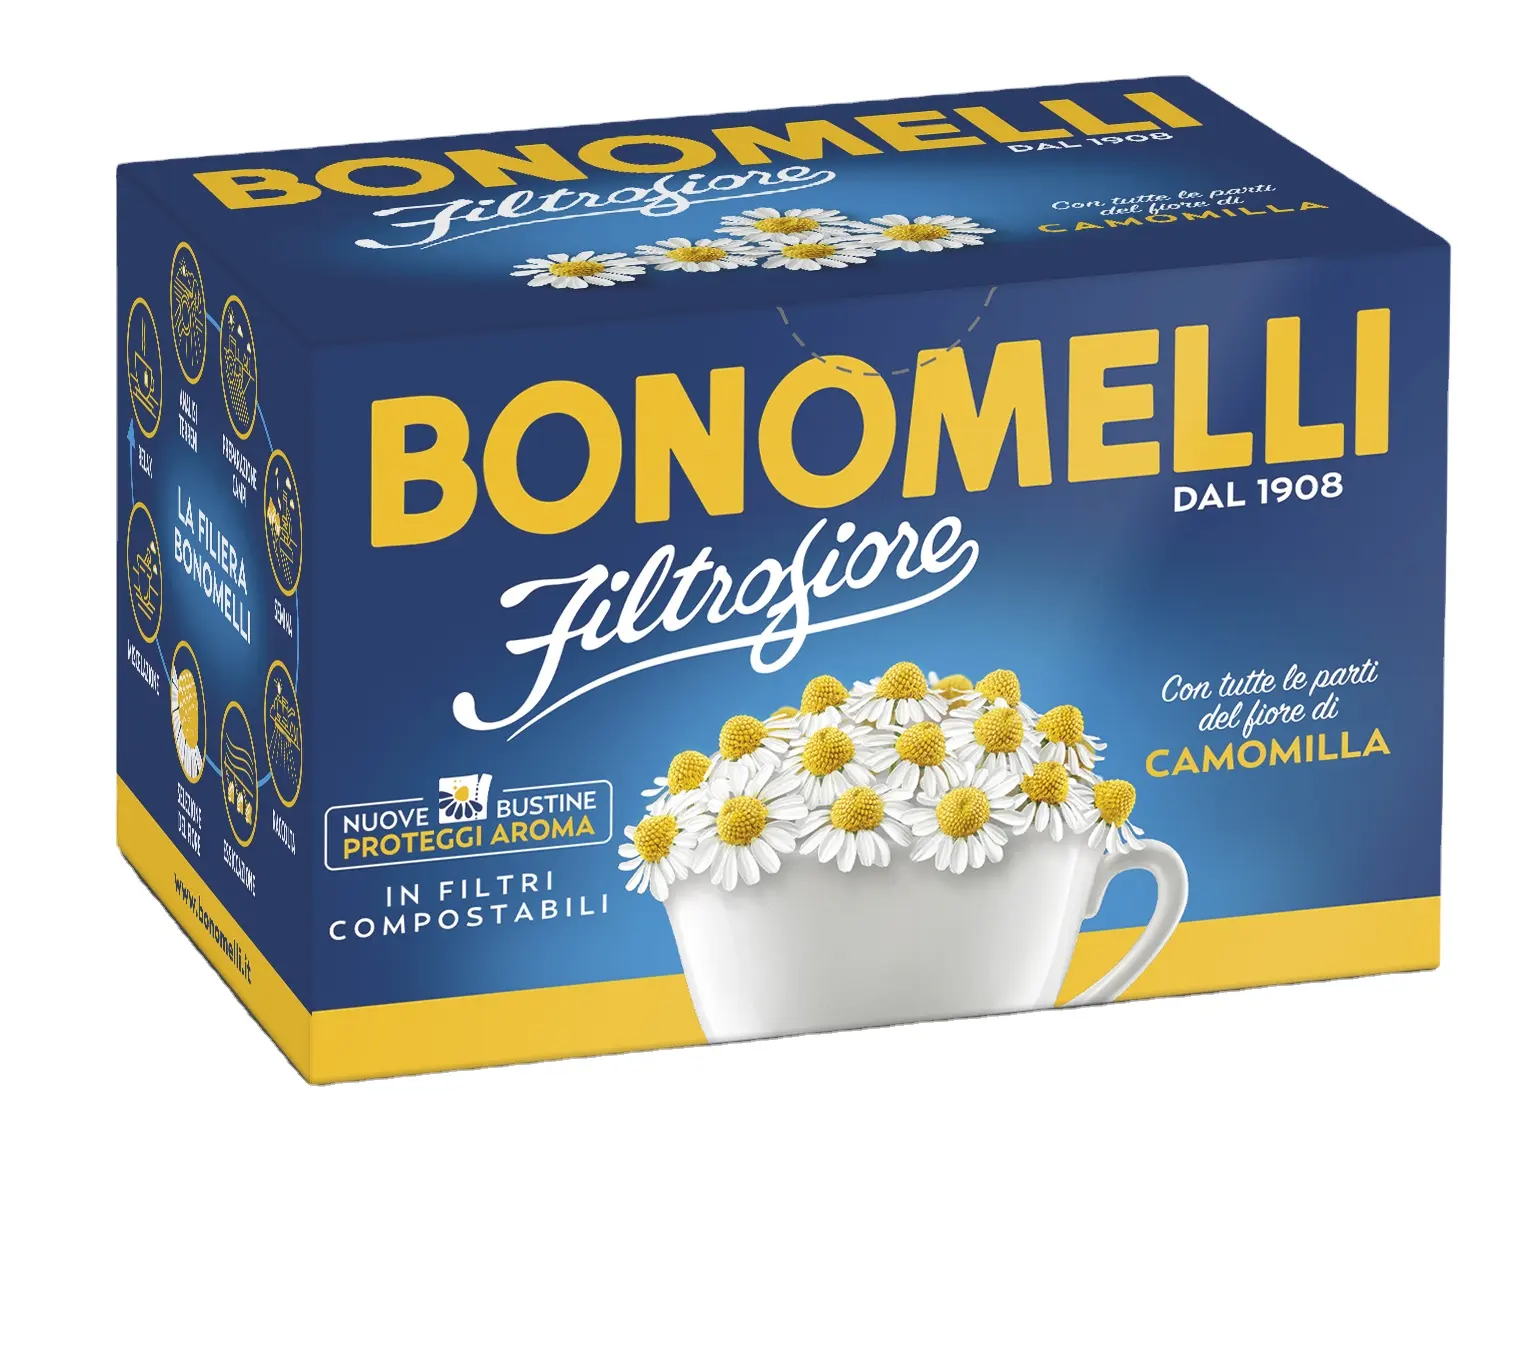 Beste Qualität Italienische Kamille Filt rofiore Kräutertee Bonomelli 14 Beutel in Tee kiste Zur Entspannung und zum Wohlbefinden des Magens